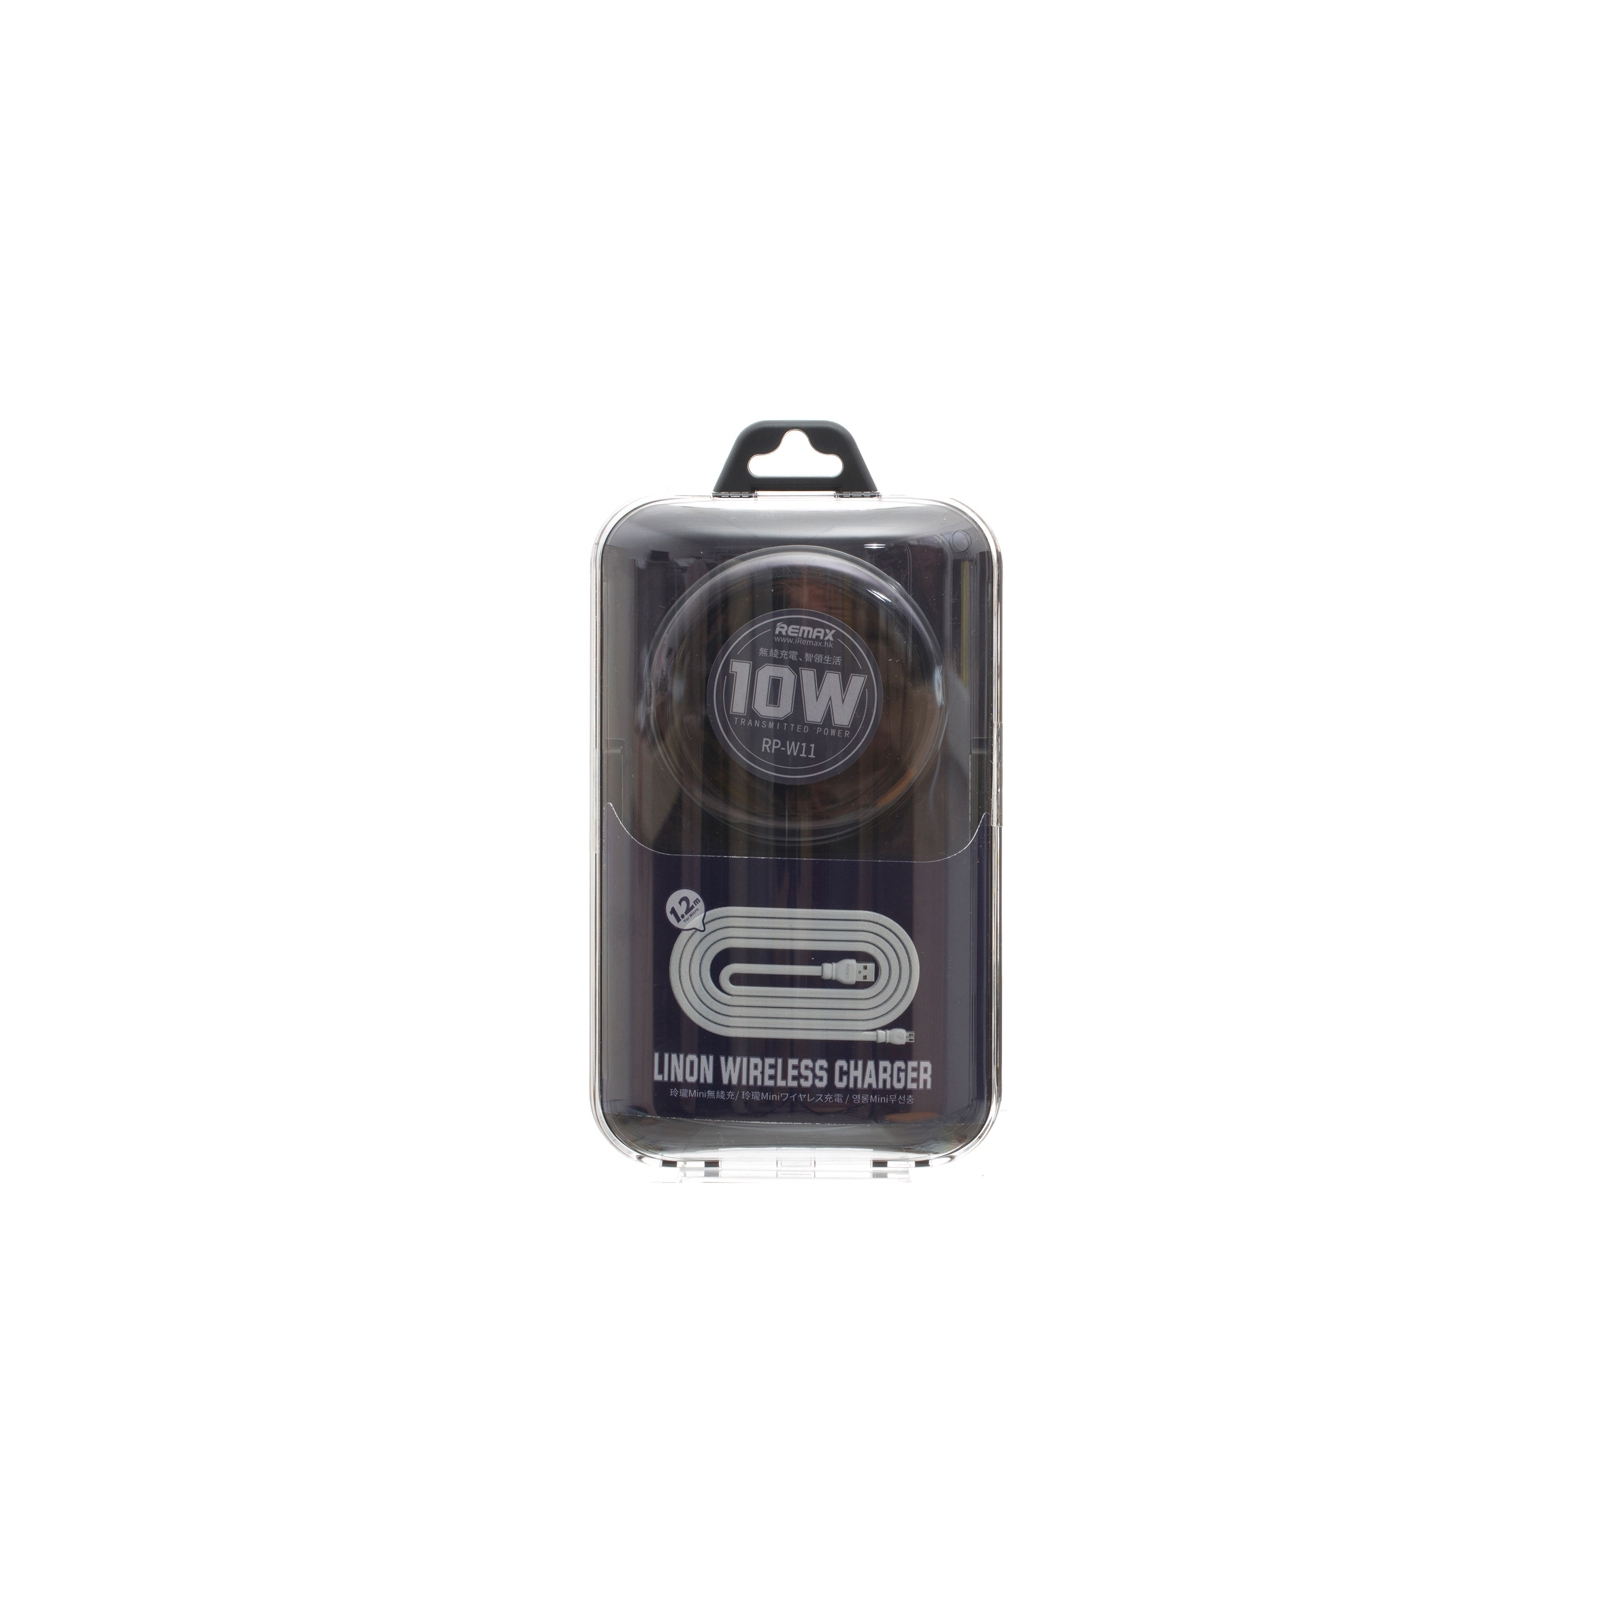 Зарядное устройство Remax Linon wireless charger 10W, black (RP-W11-BLACK) изображение 4